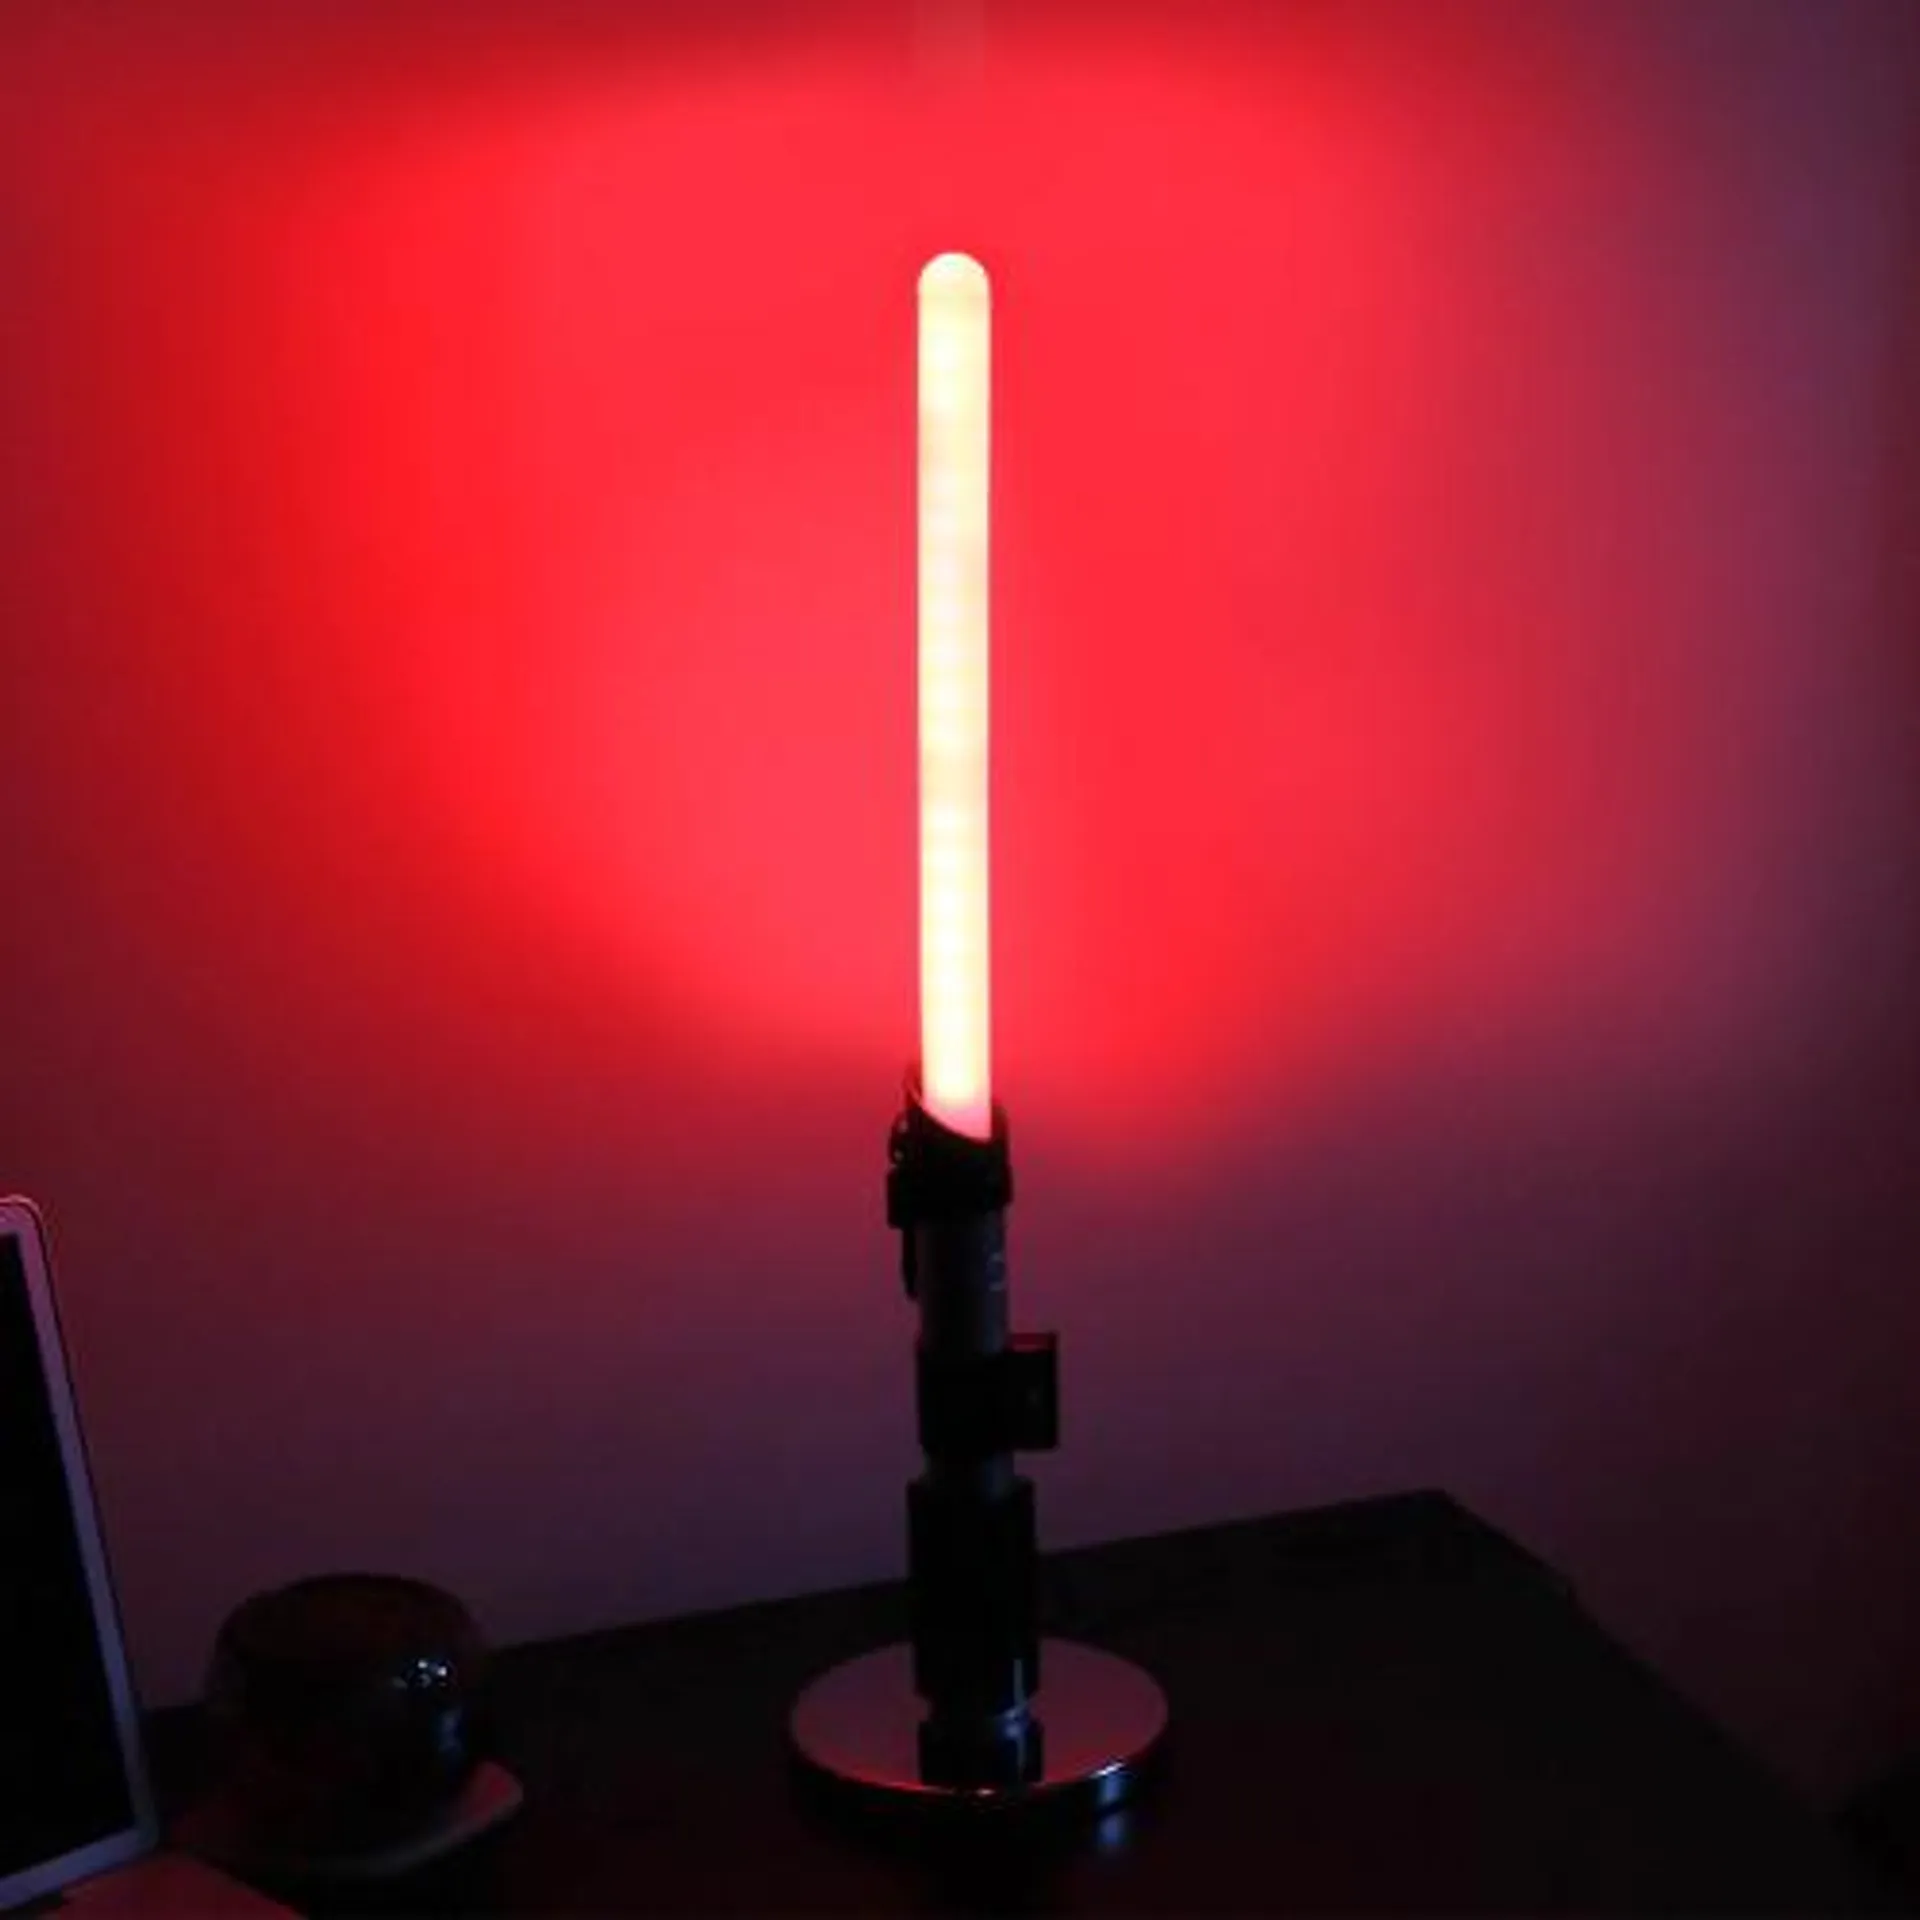 Star Wars Darth Vader Lightsaber Desk Lamp - Only at Menkind!